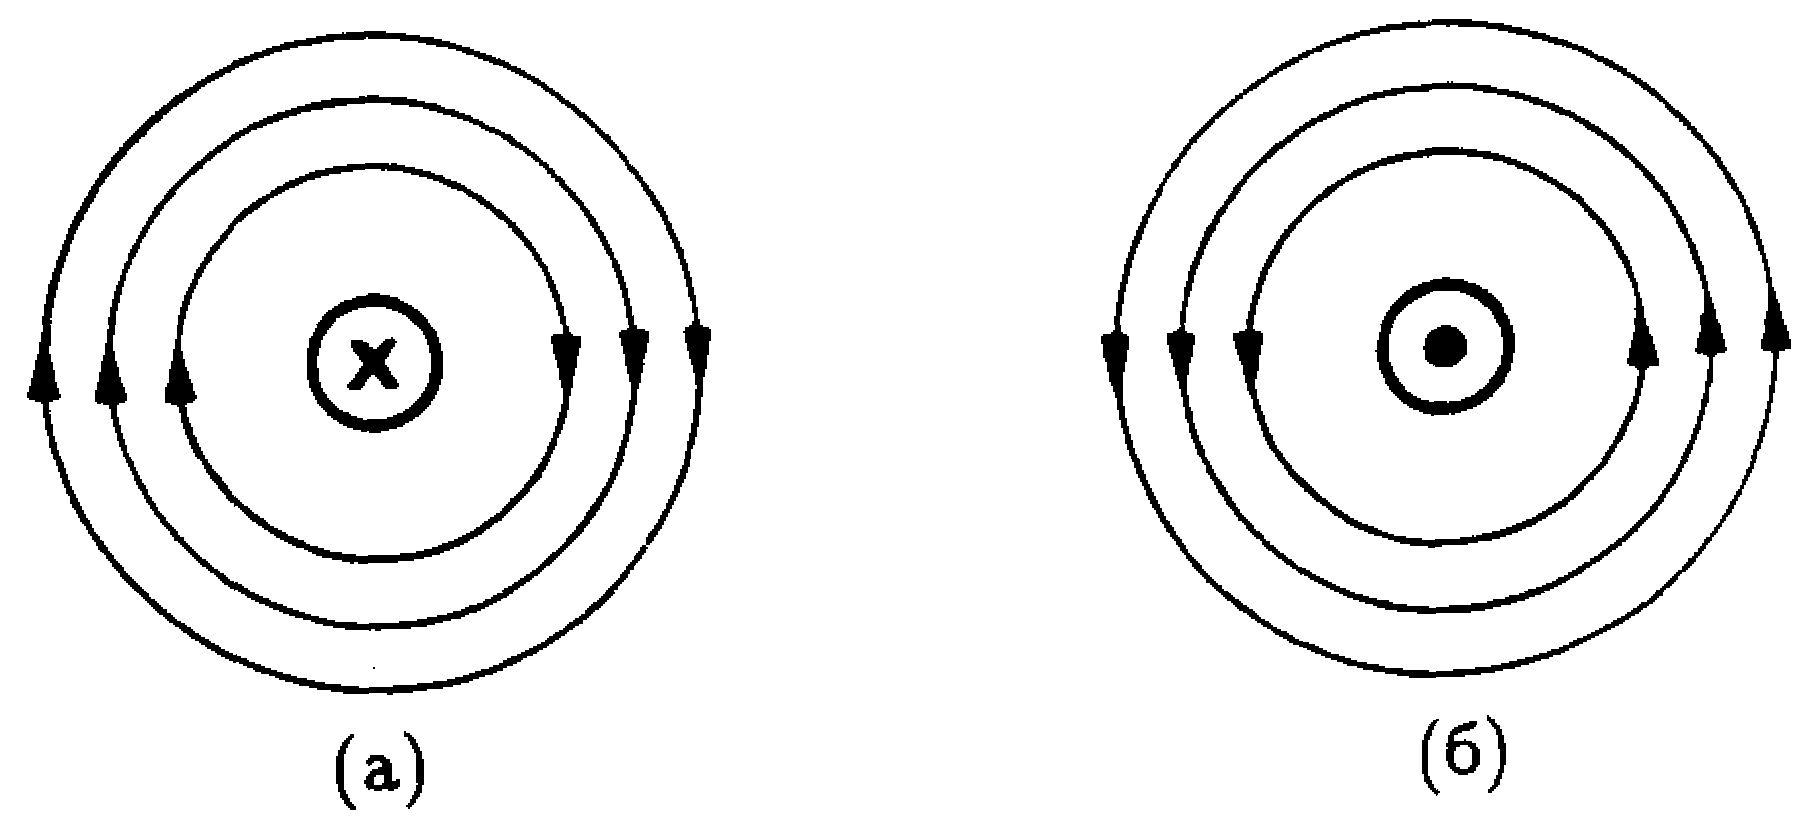 Укажите стрелками направление силовых линий. Линии магнитной индукции прямого проводника. Линии магнитного поля проводника с током. Направление магнитного поля вокруг проводника. Направление линий магнитного поля прямого проводника с током.